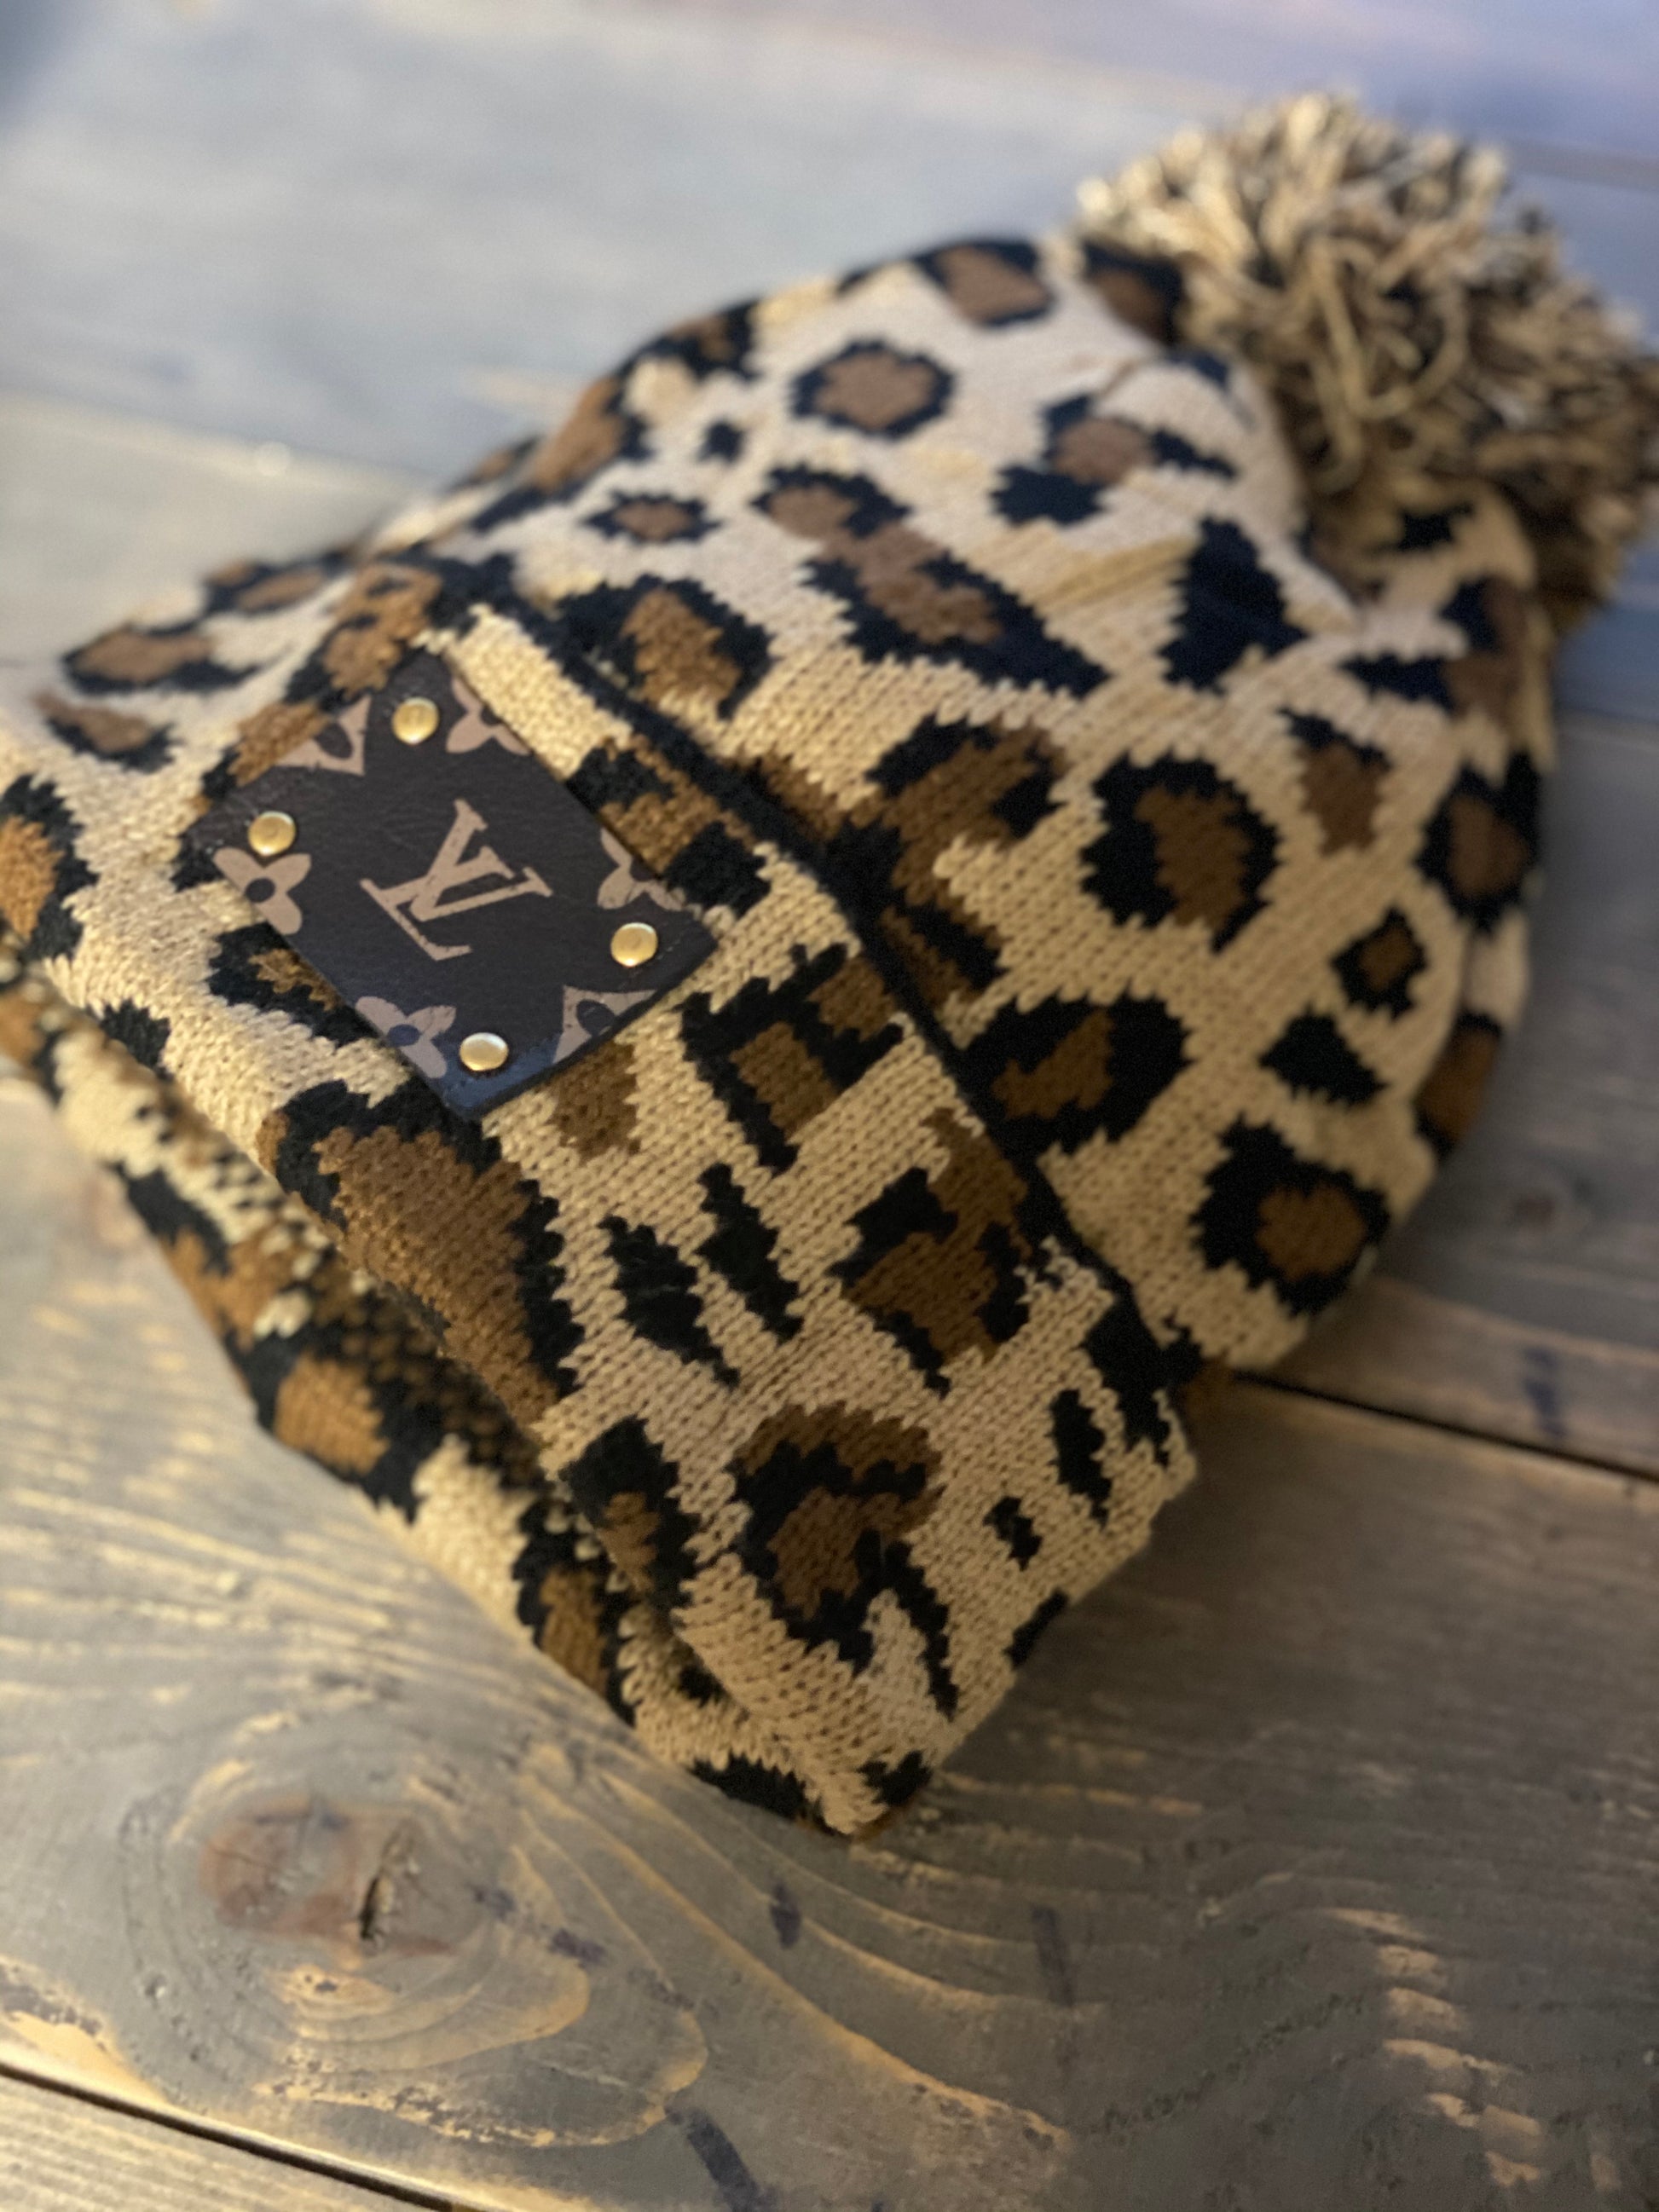 LV Leopard Hat — Shop Sachs